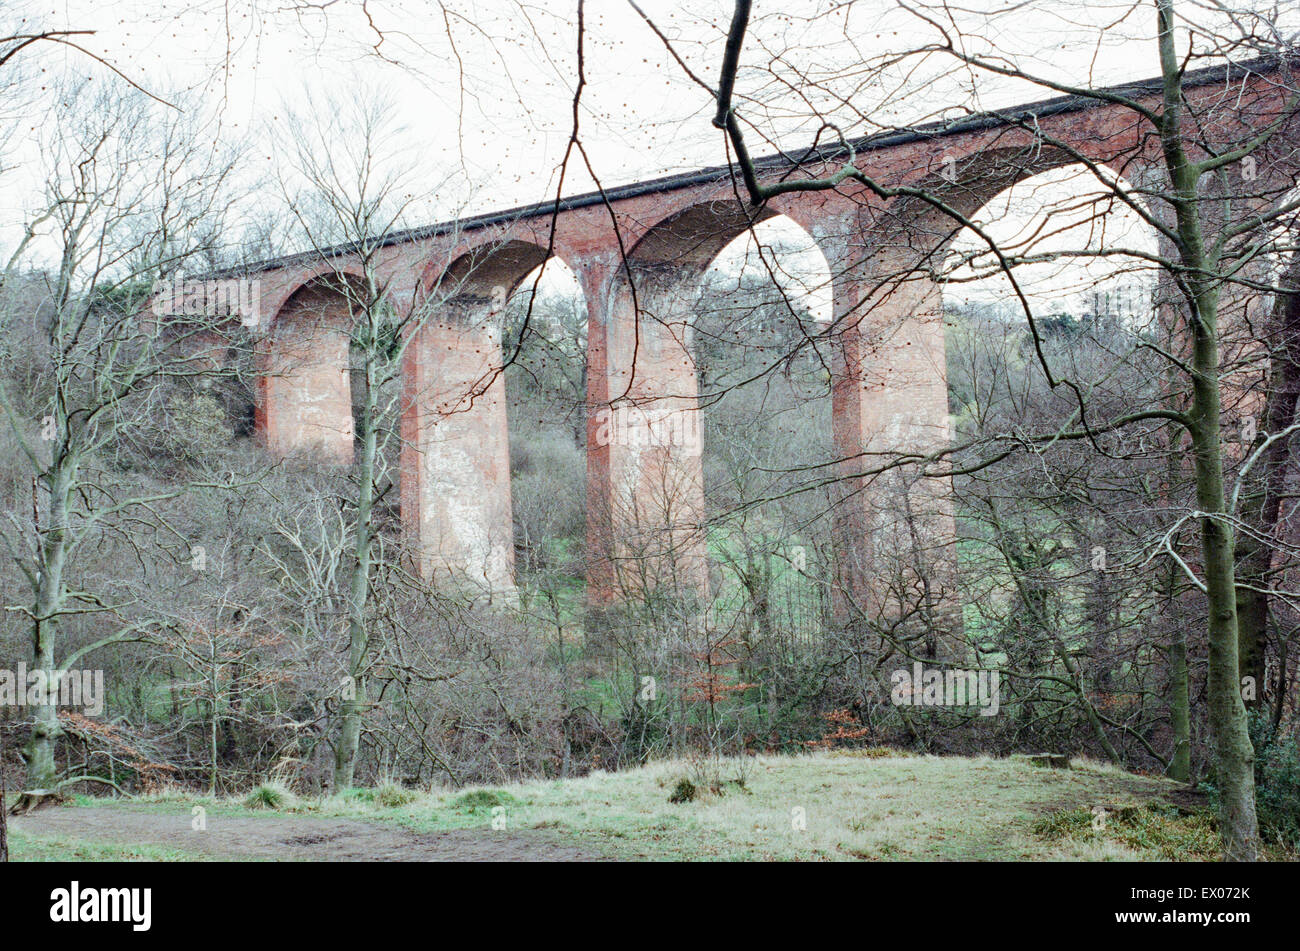 Paris Viaduc, Skelton Beck, Tees Valley, le 25 mars 1991. Banque D'Images